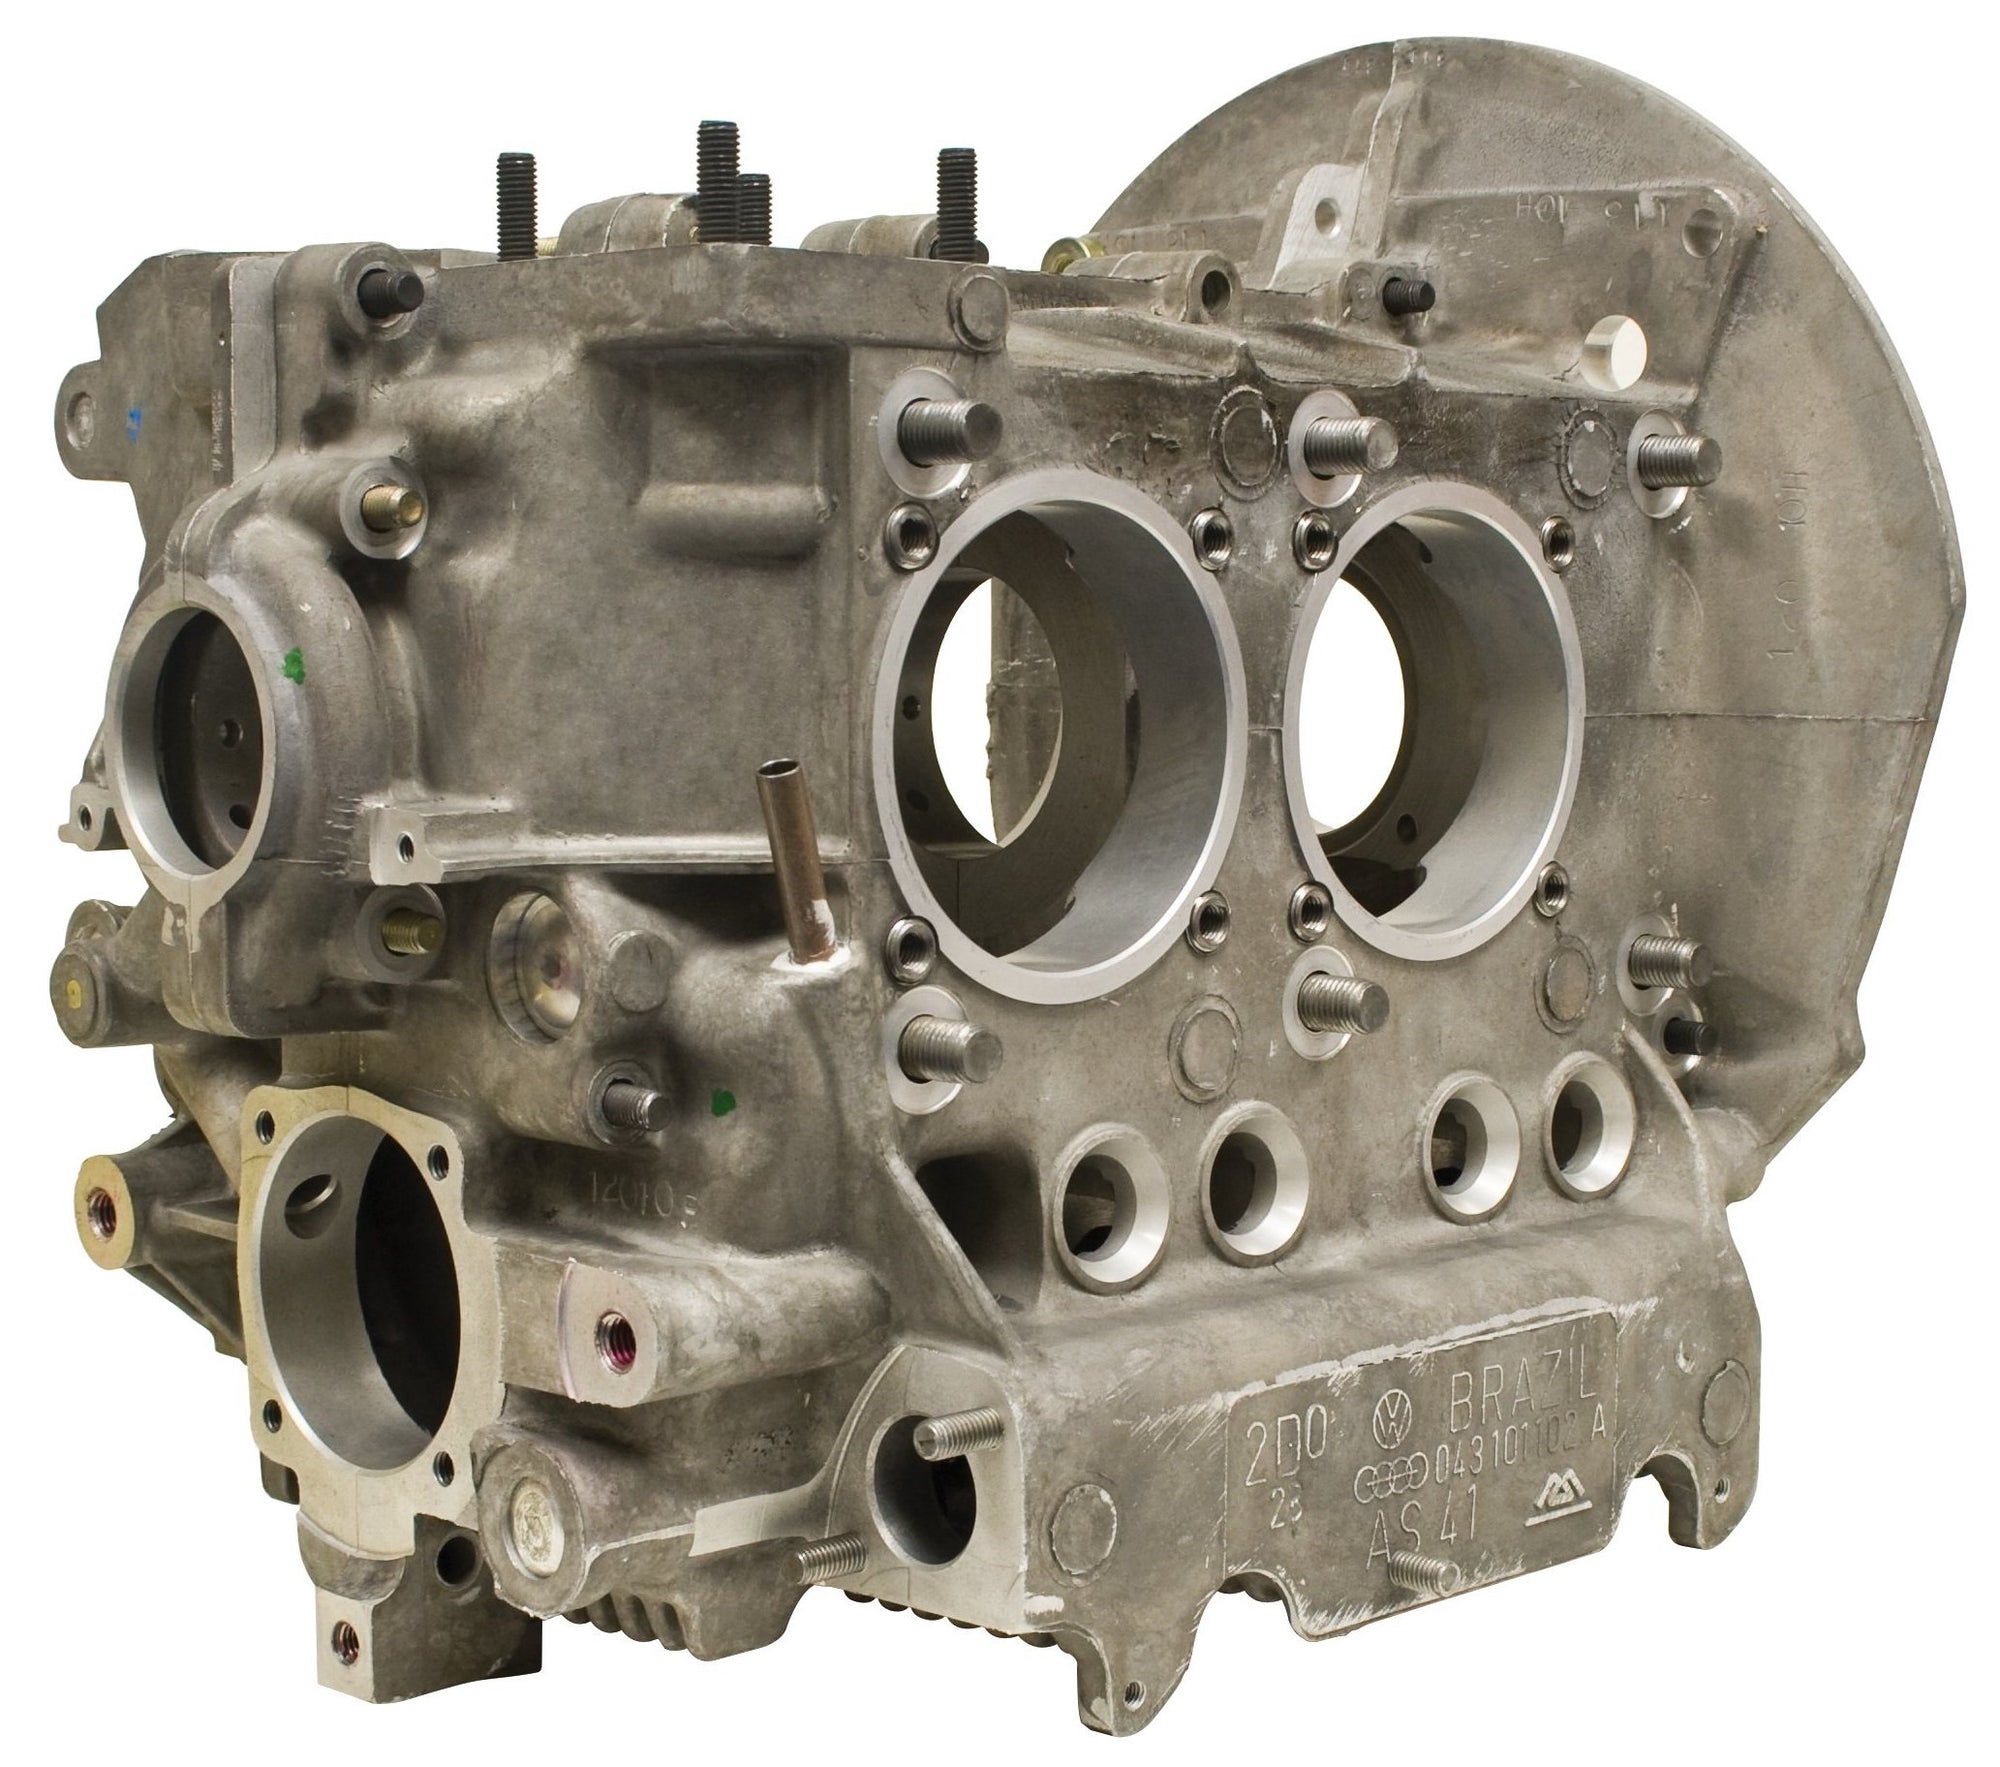 Stock 85.5mm Engine Case - Autolinea Magnesium